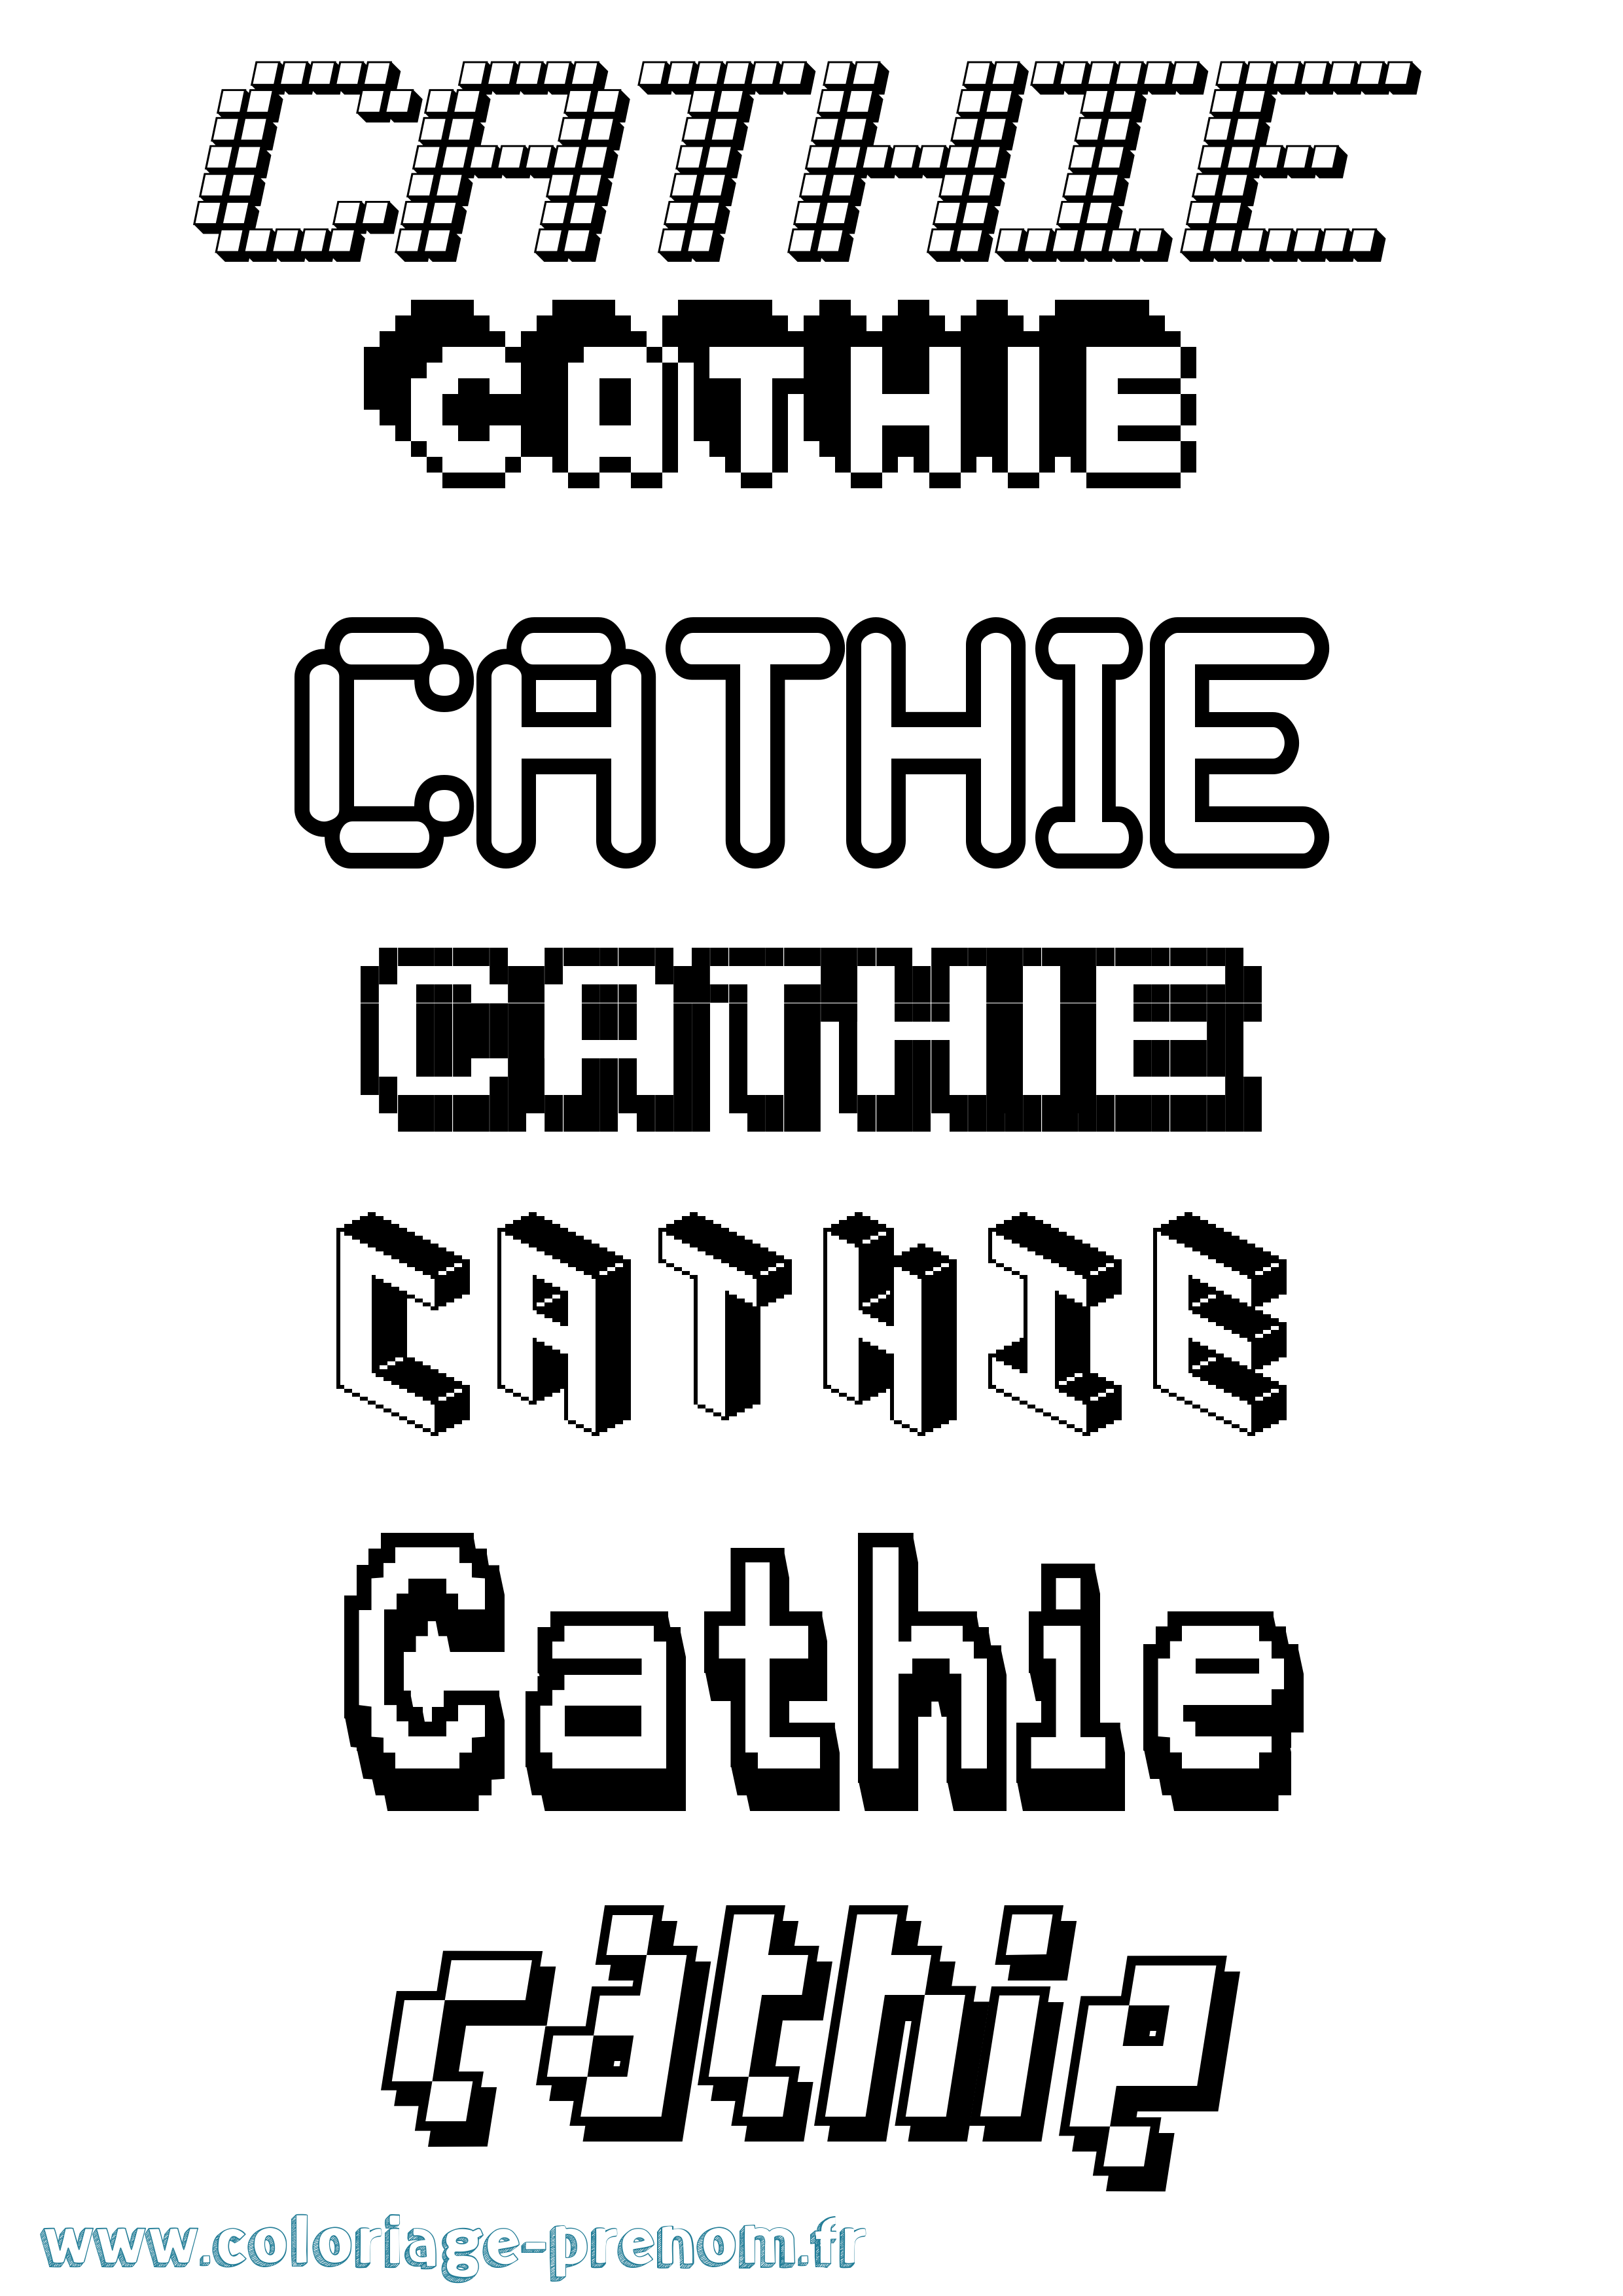 Coloriage prénom Cathie Pixel